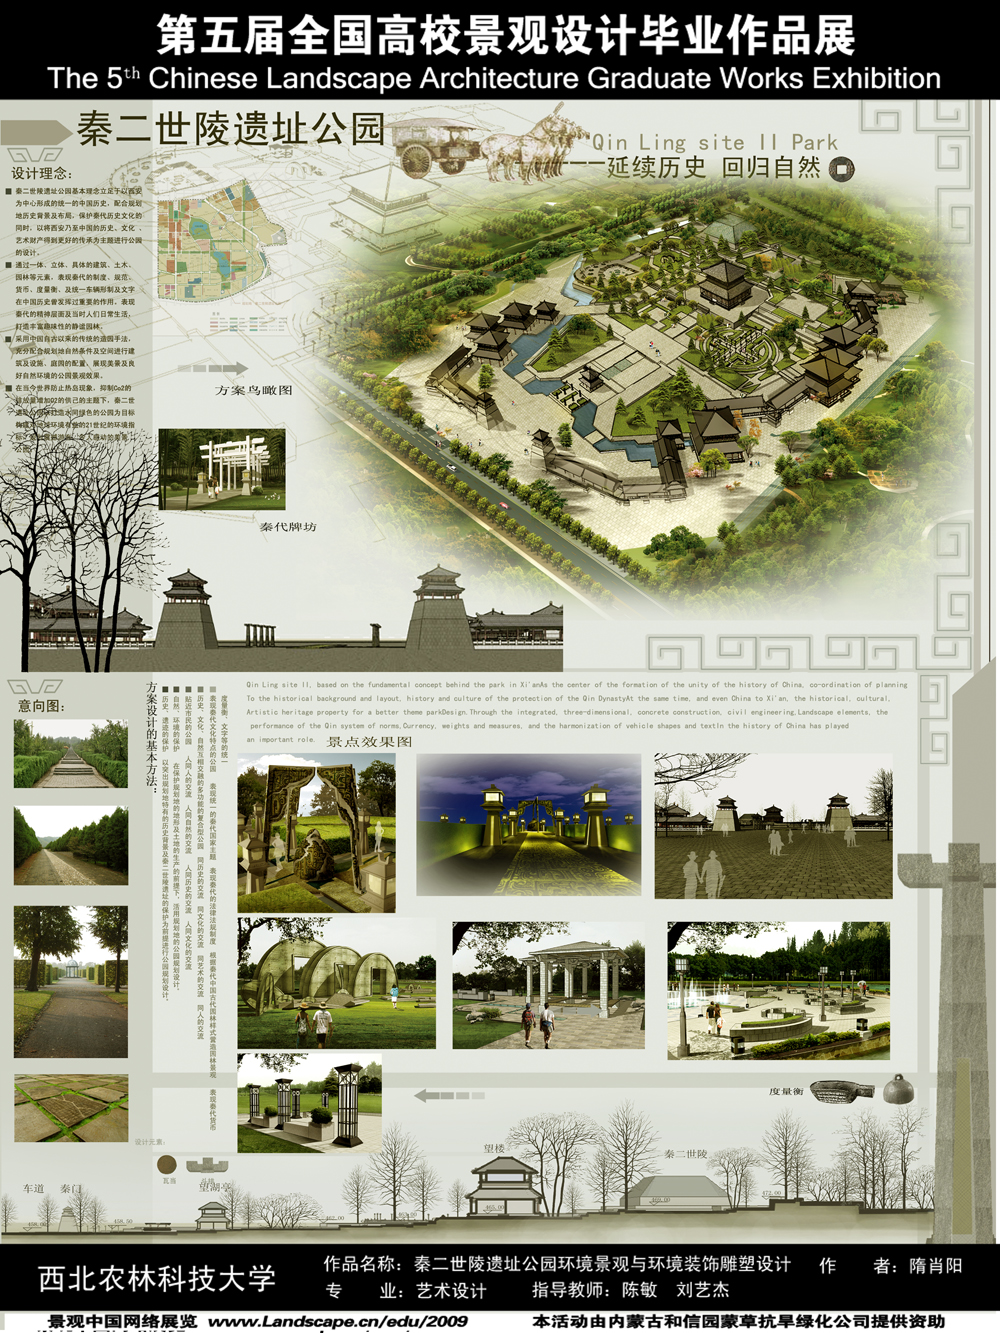 秦二世陵遗址公园环境景观与环境装饰雕塑设计-1